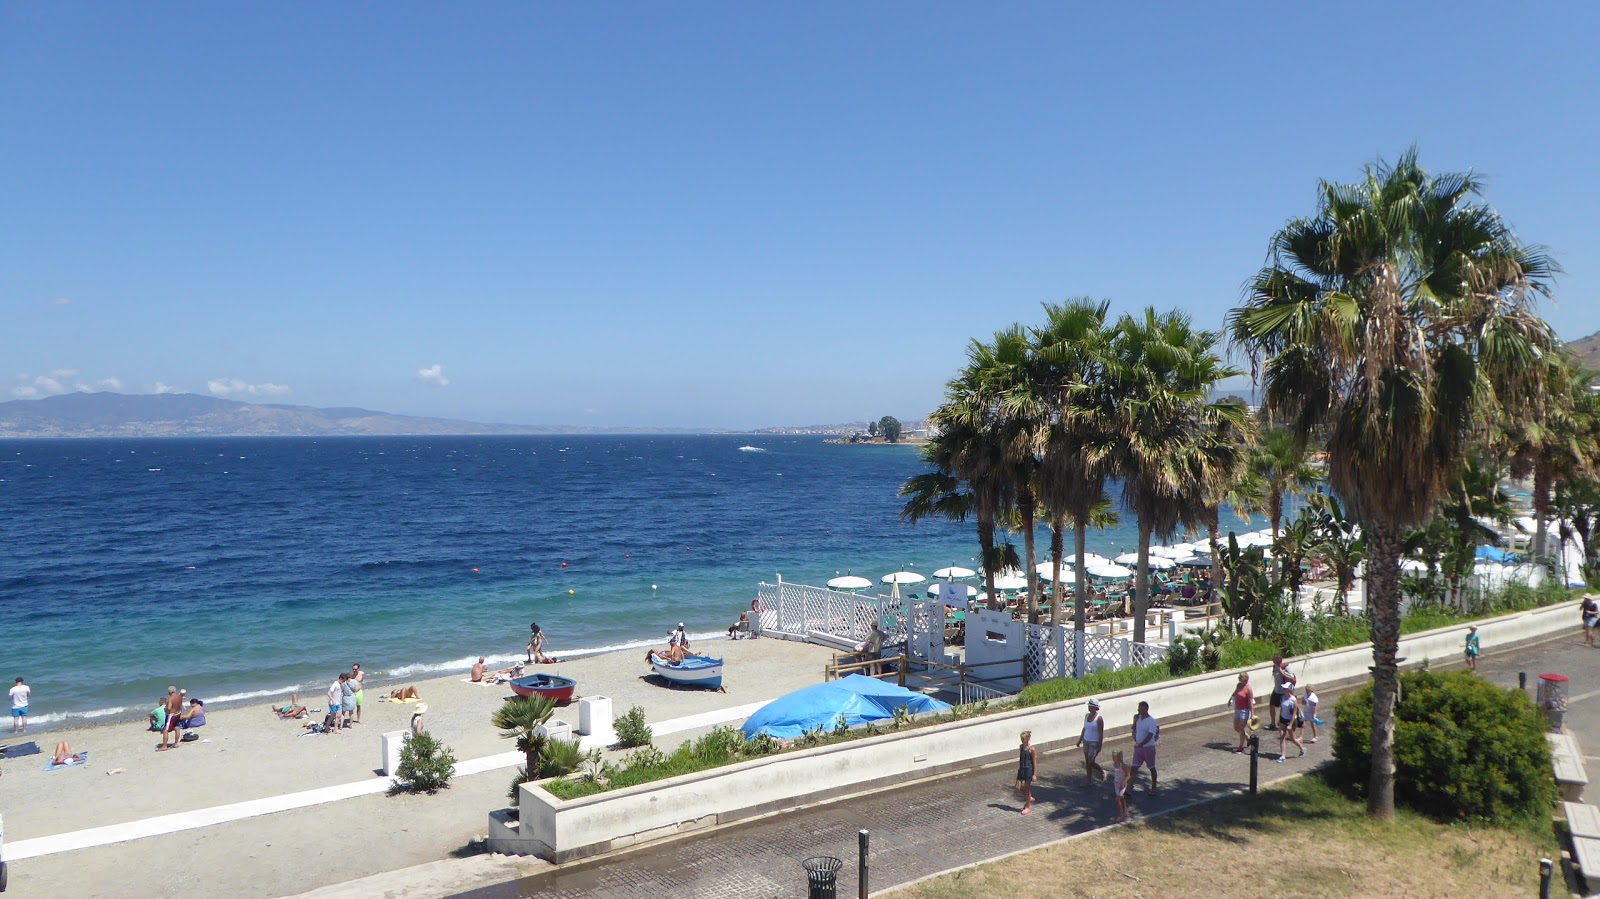 Photo of Reggio Calabria beach with spacious shore